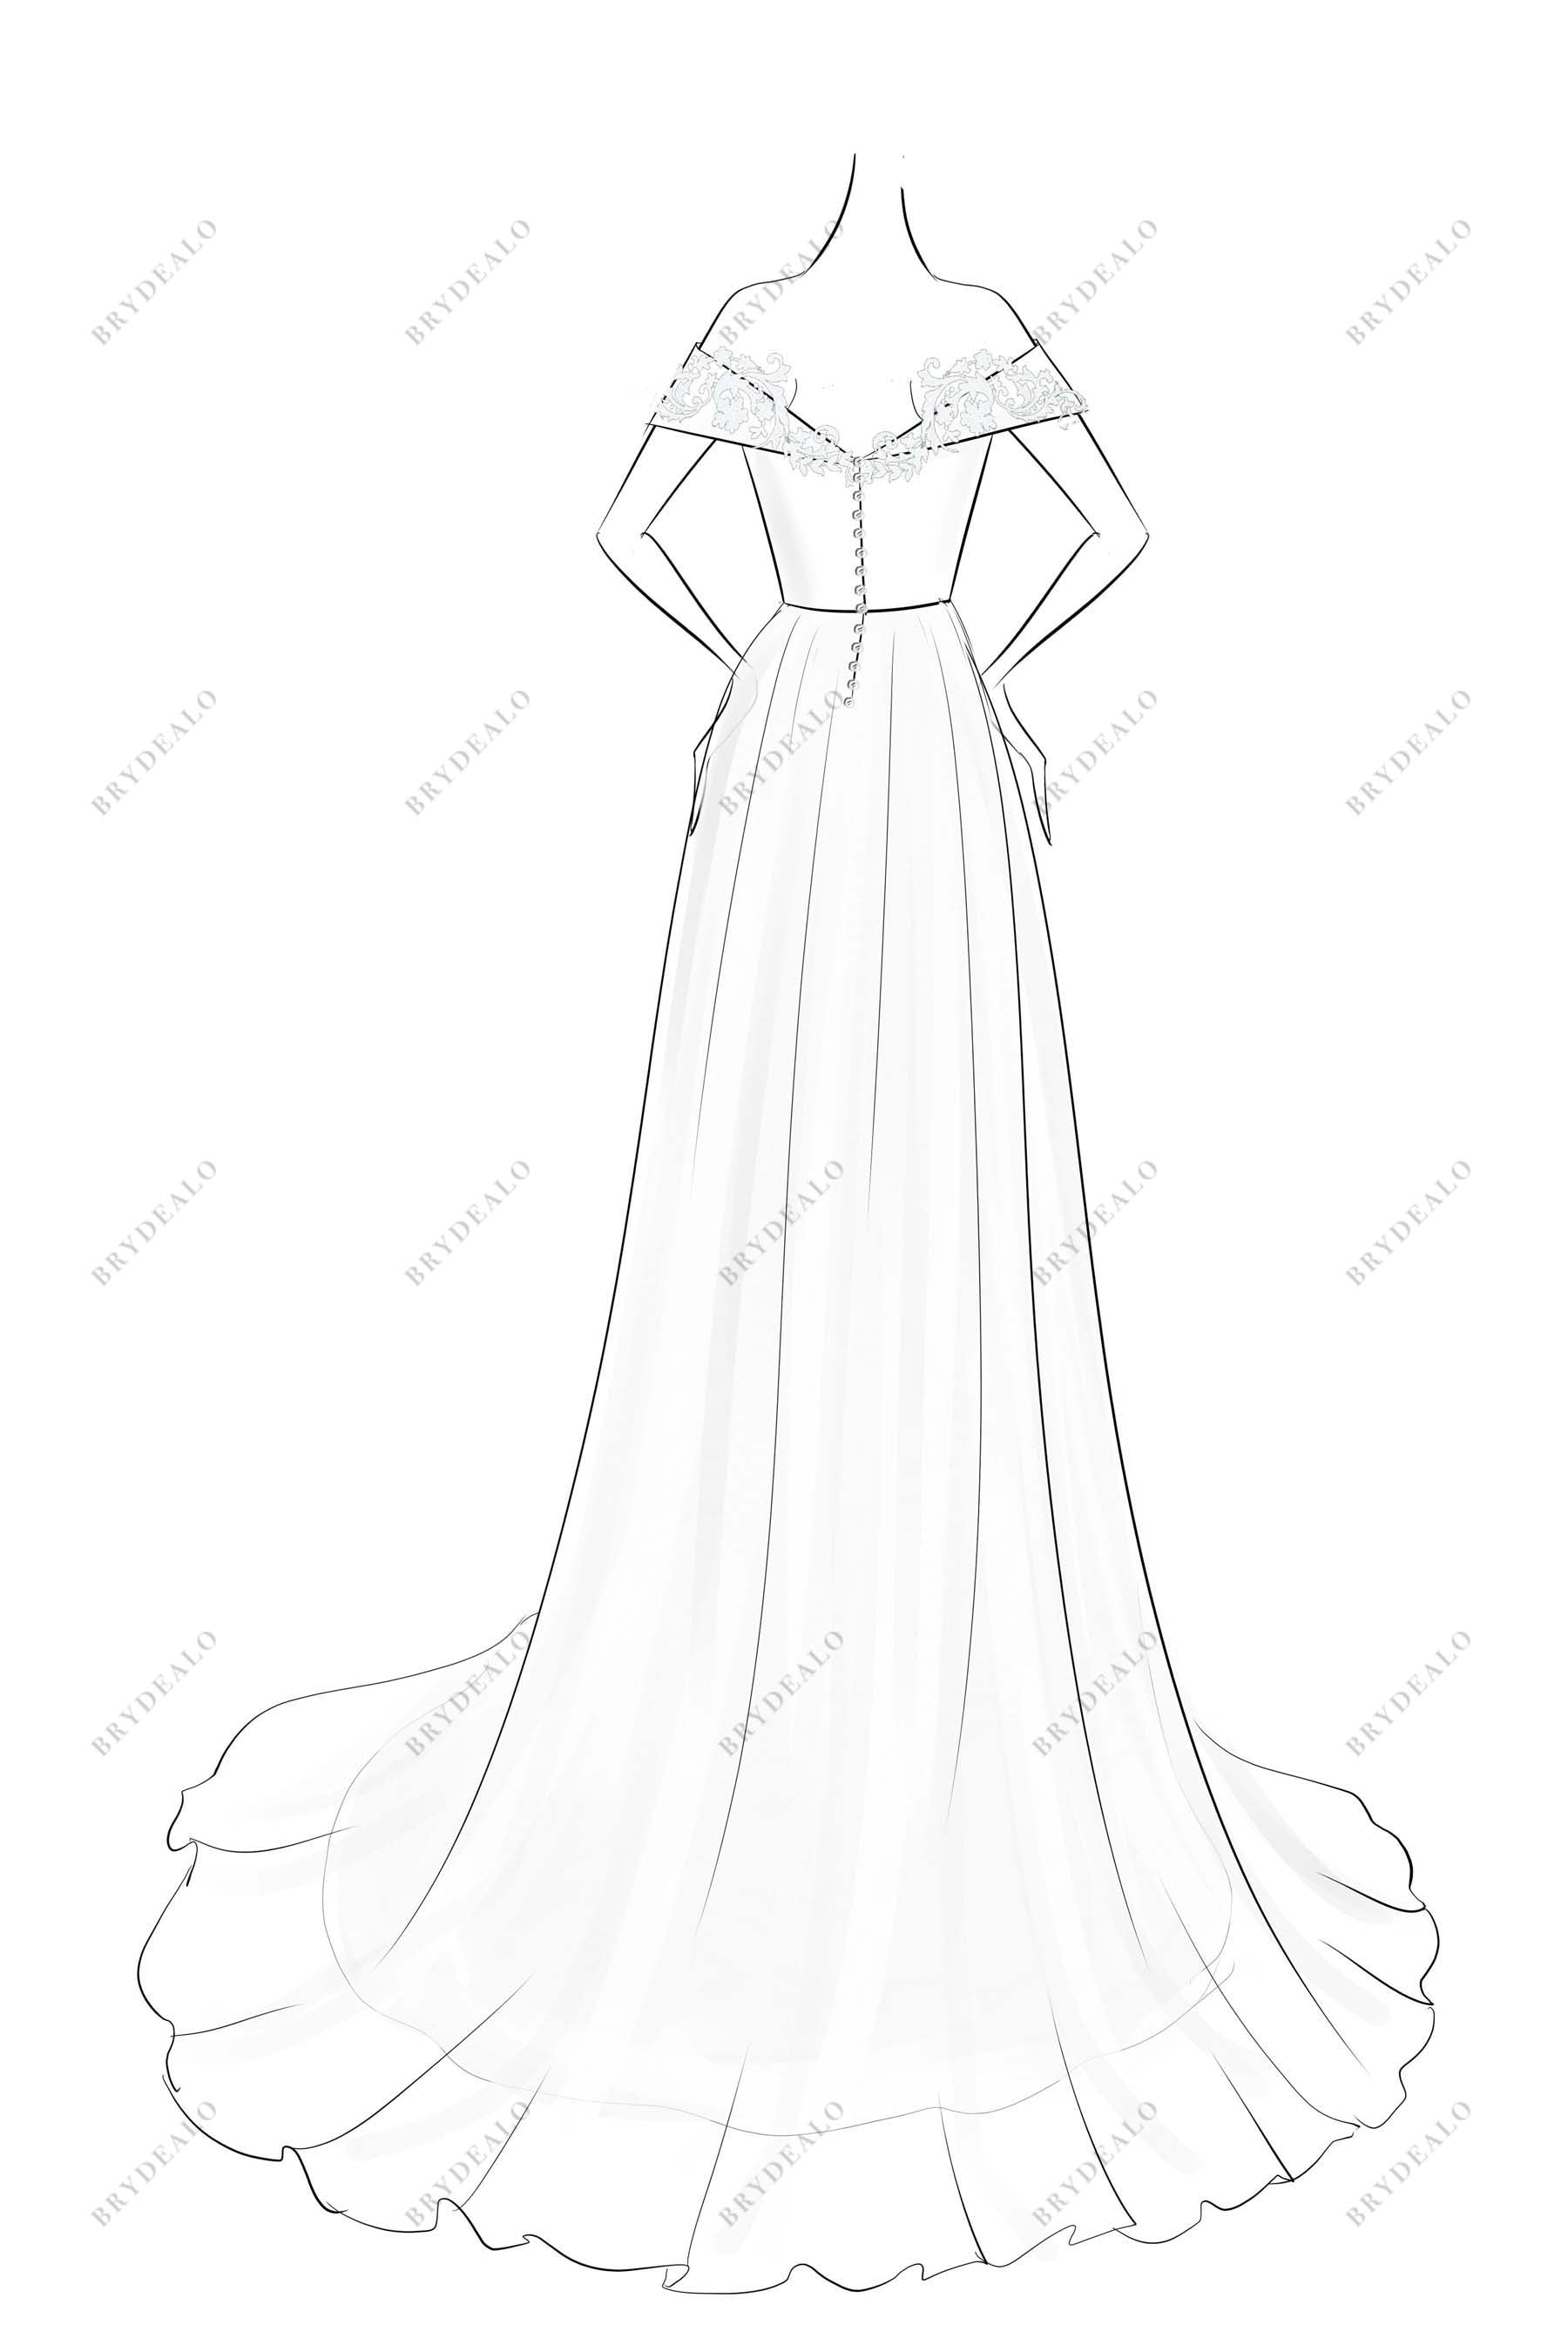 V-neck A-line Off Shoulder Bridal Dress Sketch